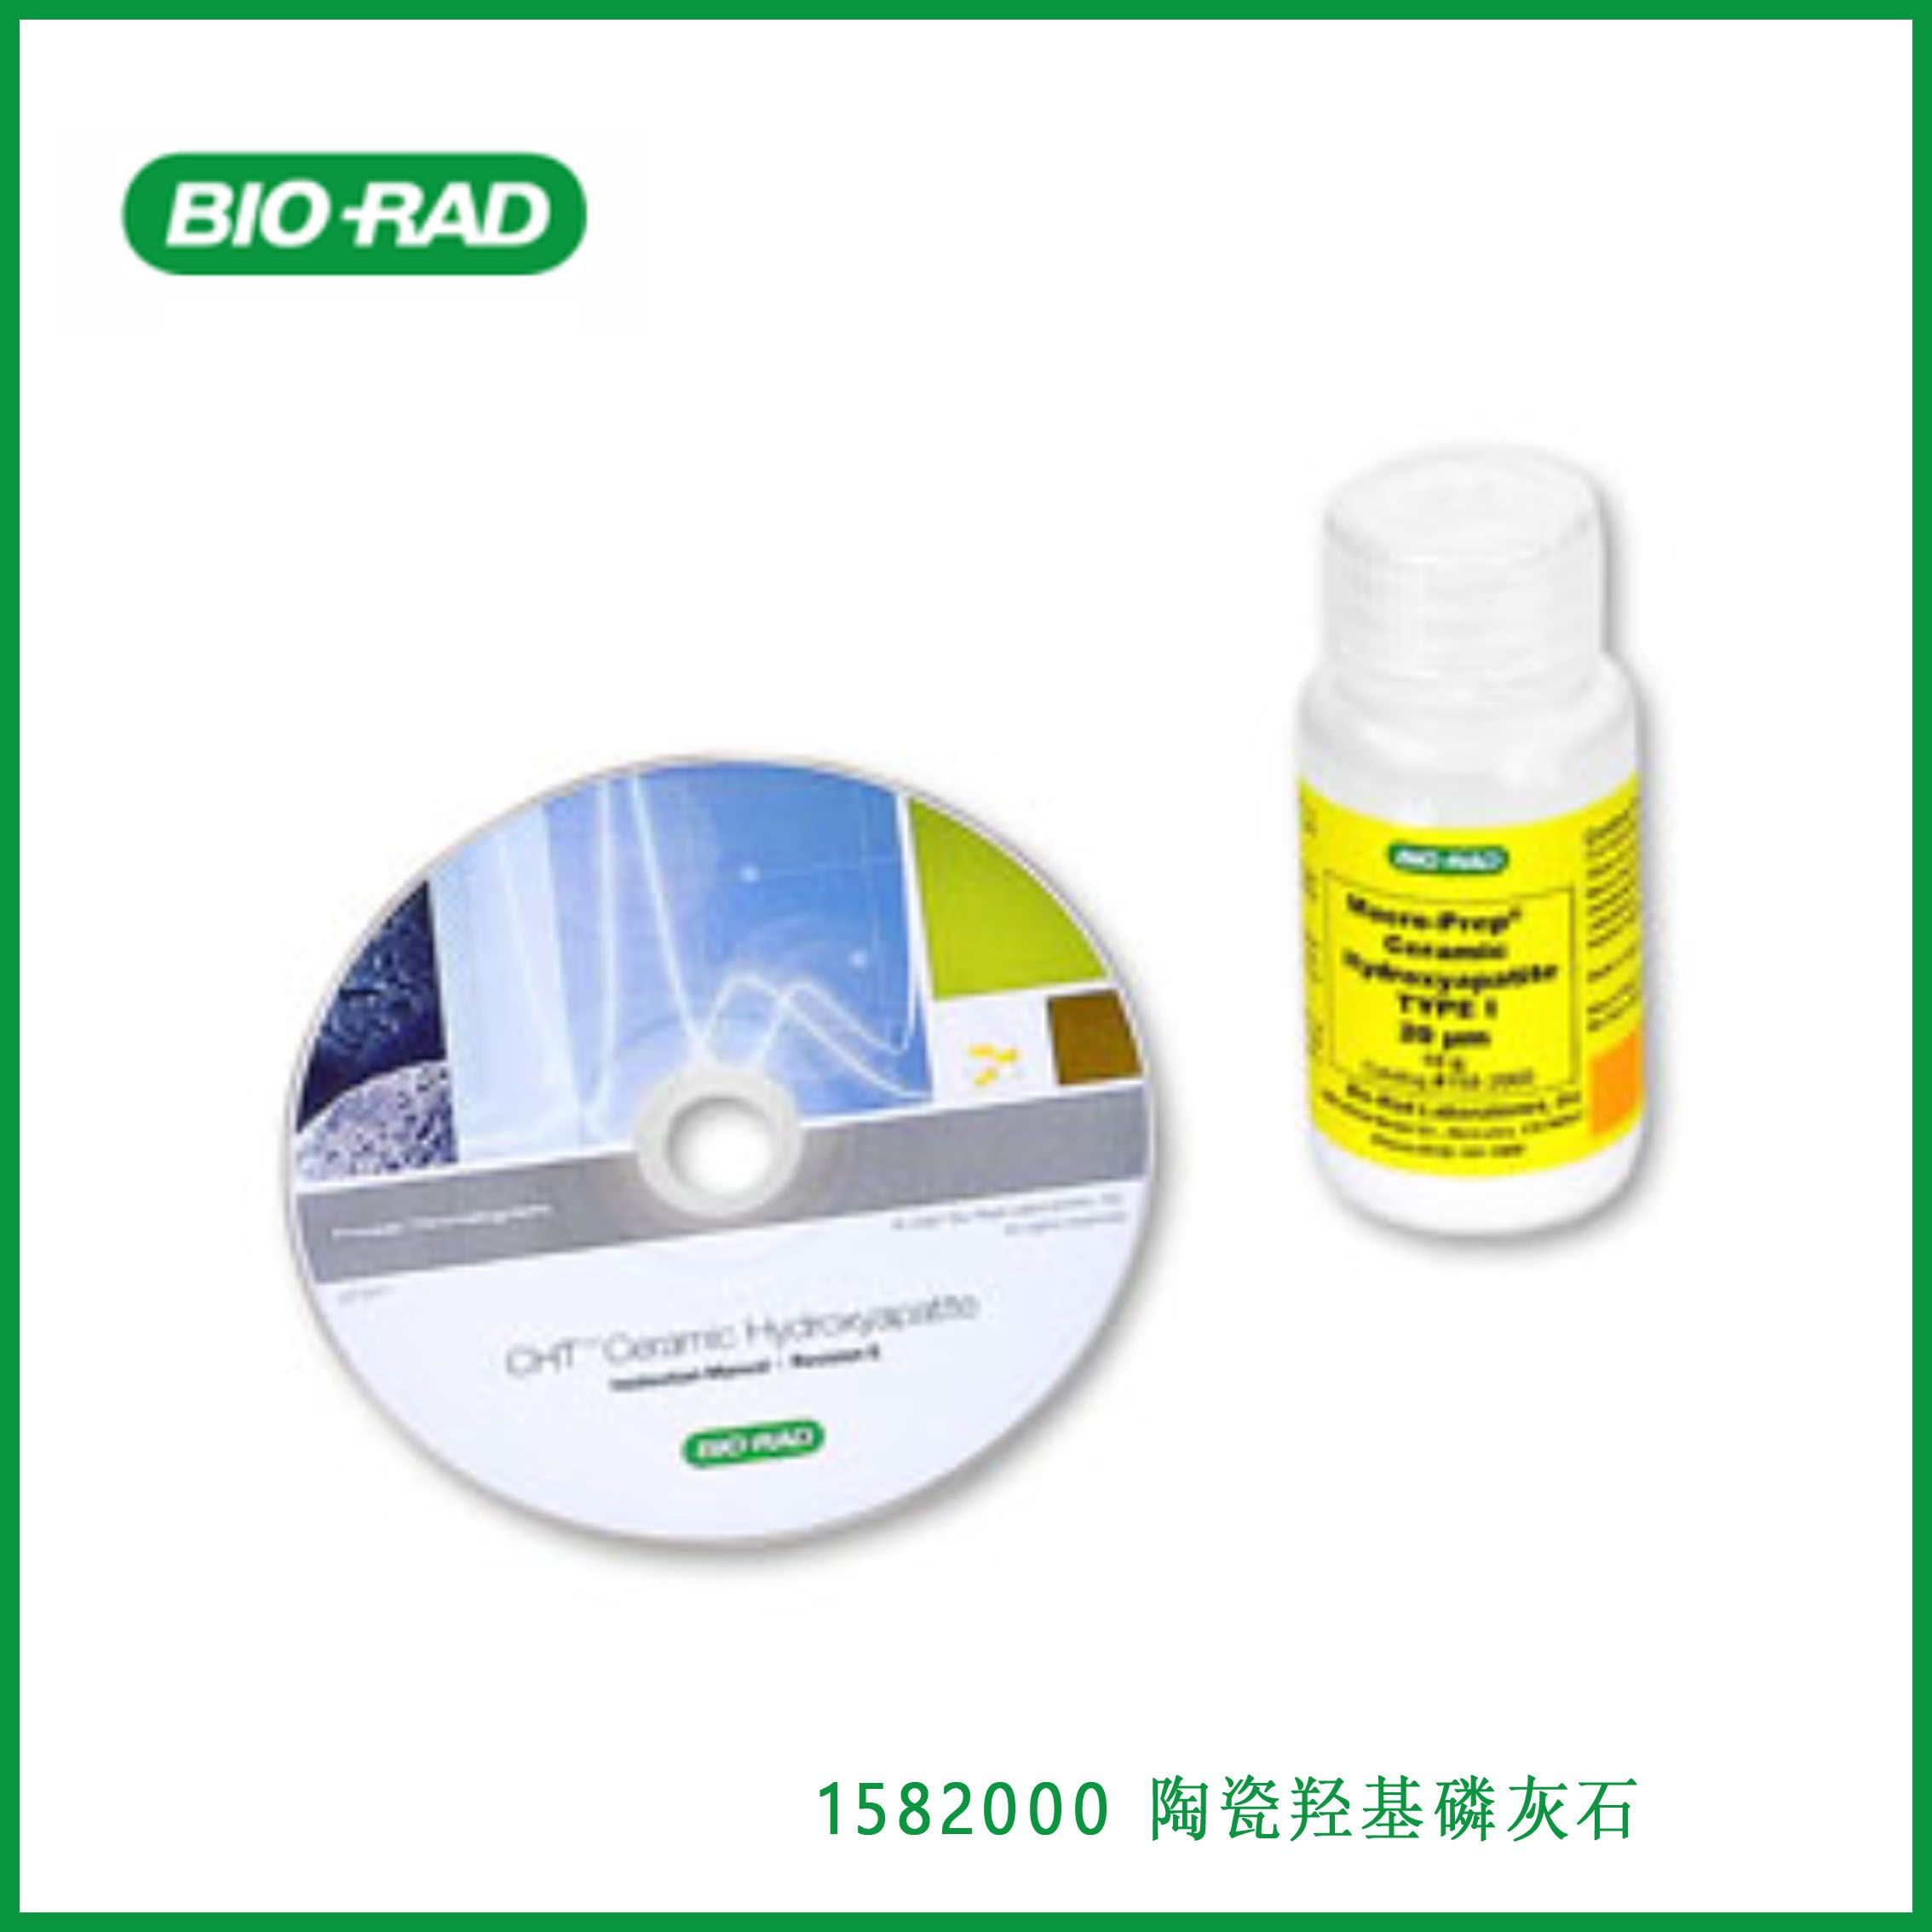 伯乐Bio-Rad 1582000/1582200 CHT Ceramic Hydroxyapatite， 20μm陶瓷羟基磷灰石，10g，现货